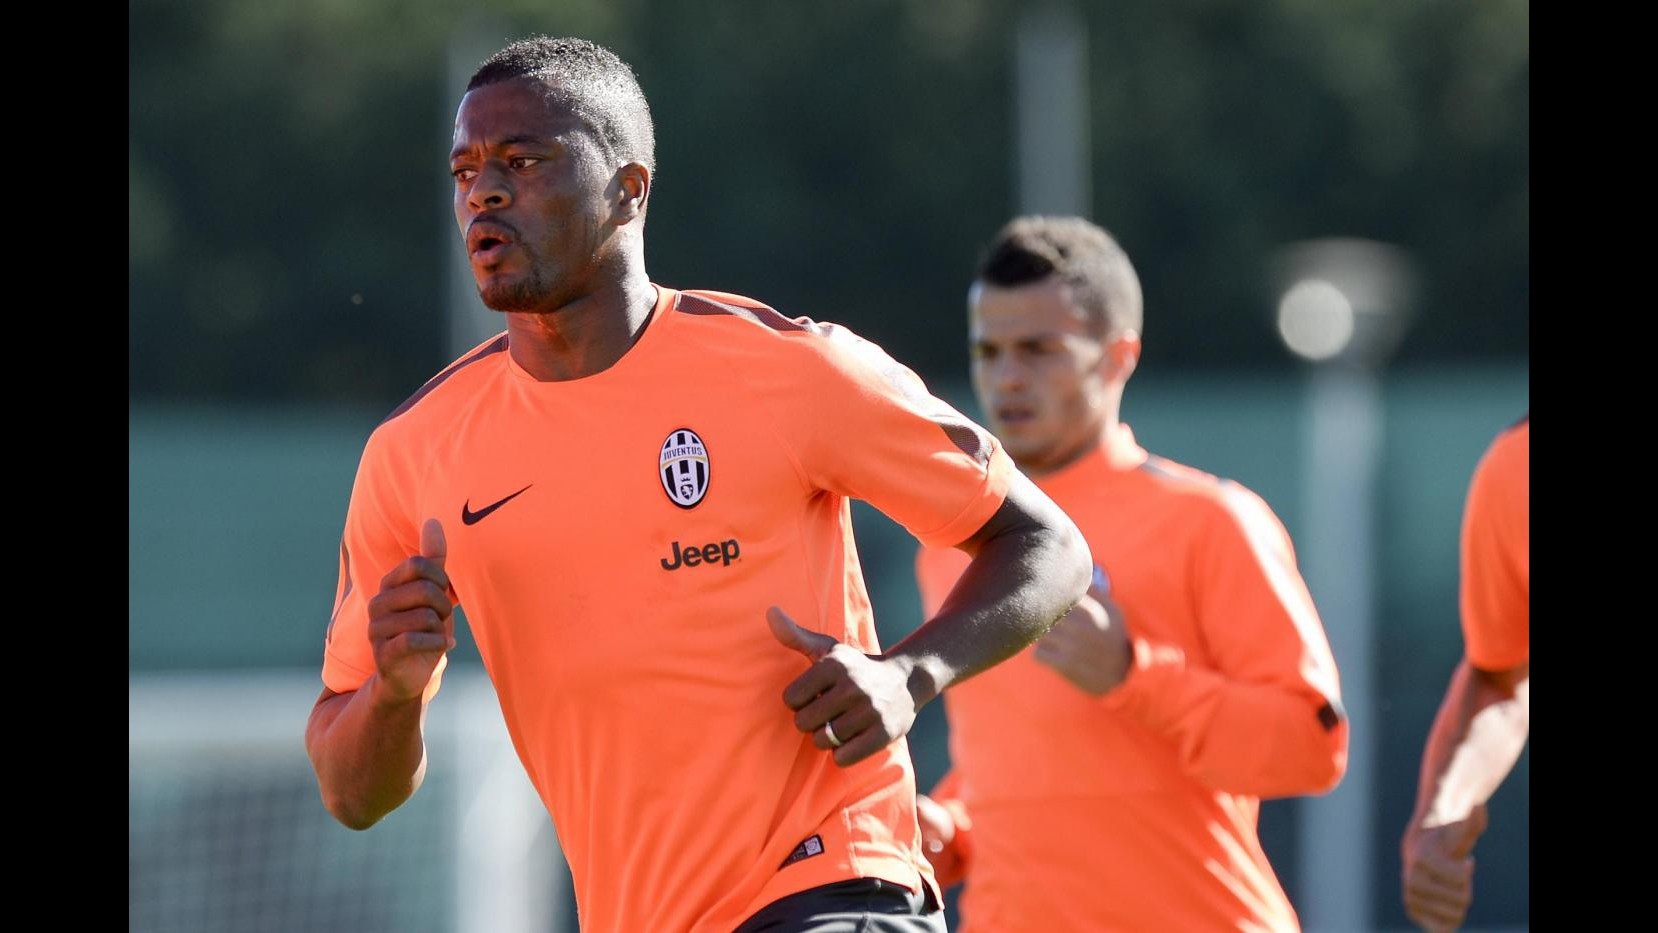 Juventus, lesione muscolare per Evra e un mese di stop